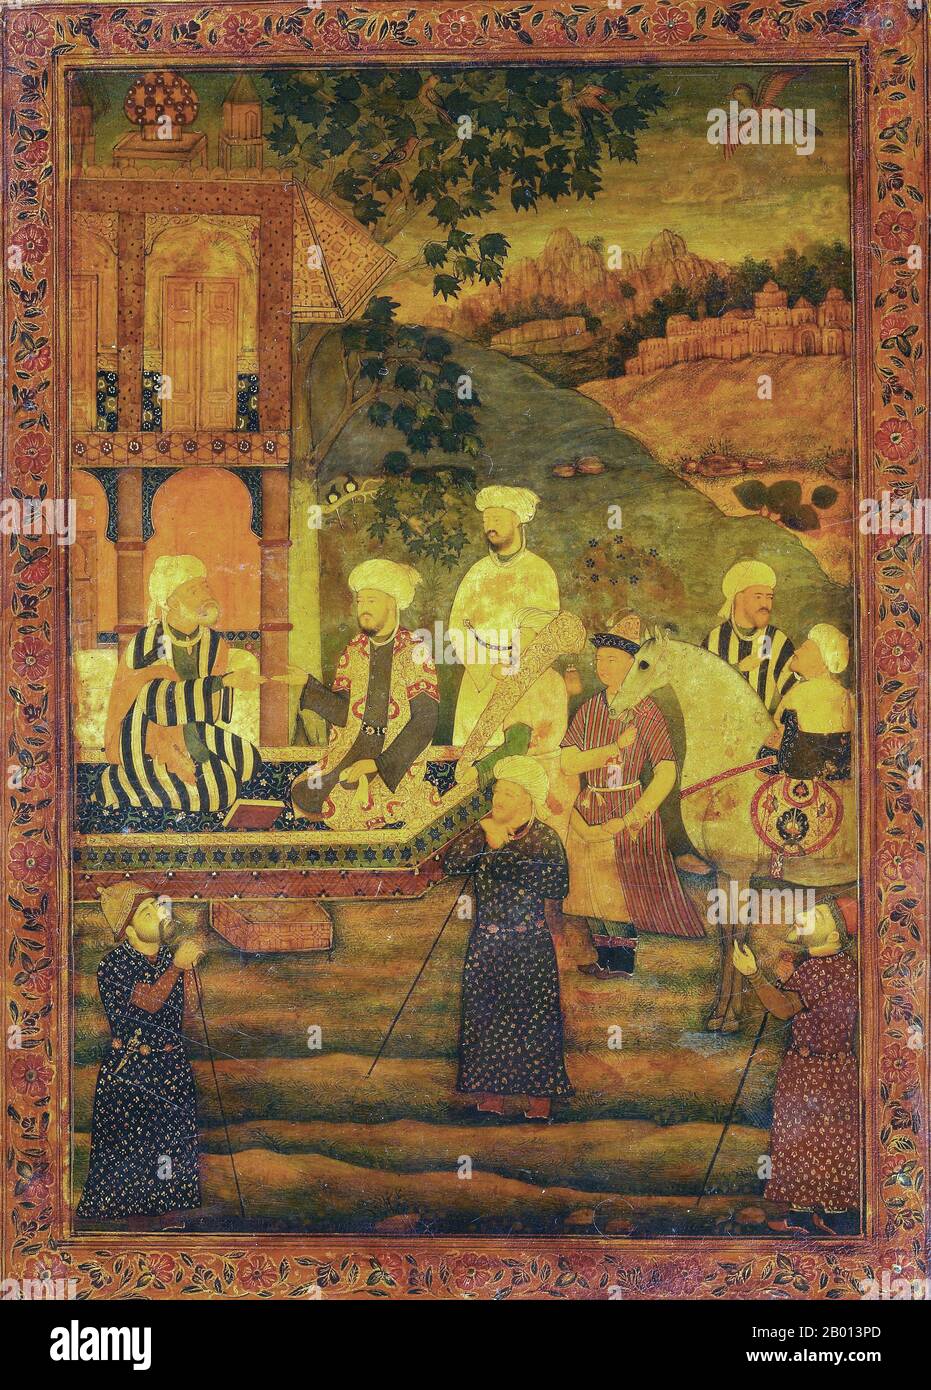 India: 'Un principe che visita un Dervish che ha abbandonato il suo modo di vita'. Pittura in miniatura laccata di Abid (fl. 1600), dal 'Gulistan' di Sadi per l'imperatore Mughal Jahangir (r. 1605-1627), c. 1610 Nur-ud-din Salim Jahangir (20 settembre 1569 – 8 novembre 1627) fu il governatore dell'Impero Mughal dal 1605 fino alla sua morte. Il nome Jahangir è persiano che significa 'Conquistatore del mondo'. Nur-ud-din o Nur al-DIN è un nome arabo che significa: "Luce della fede". Nato come Principe Muhammad Salim, era il terzo e il più grande figlio sopravvissuto dell'imperatore Mogul Akbar. Foto Stock